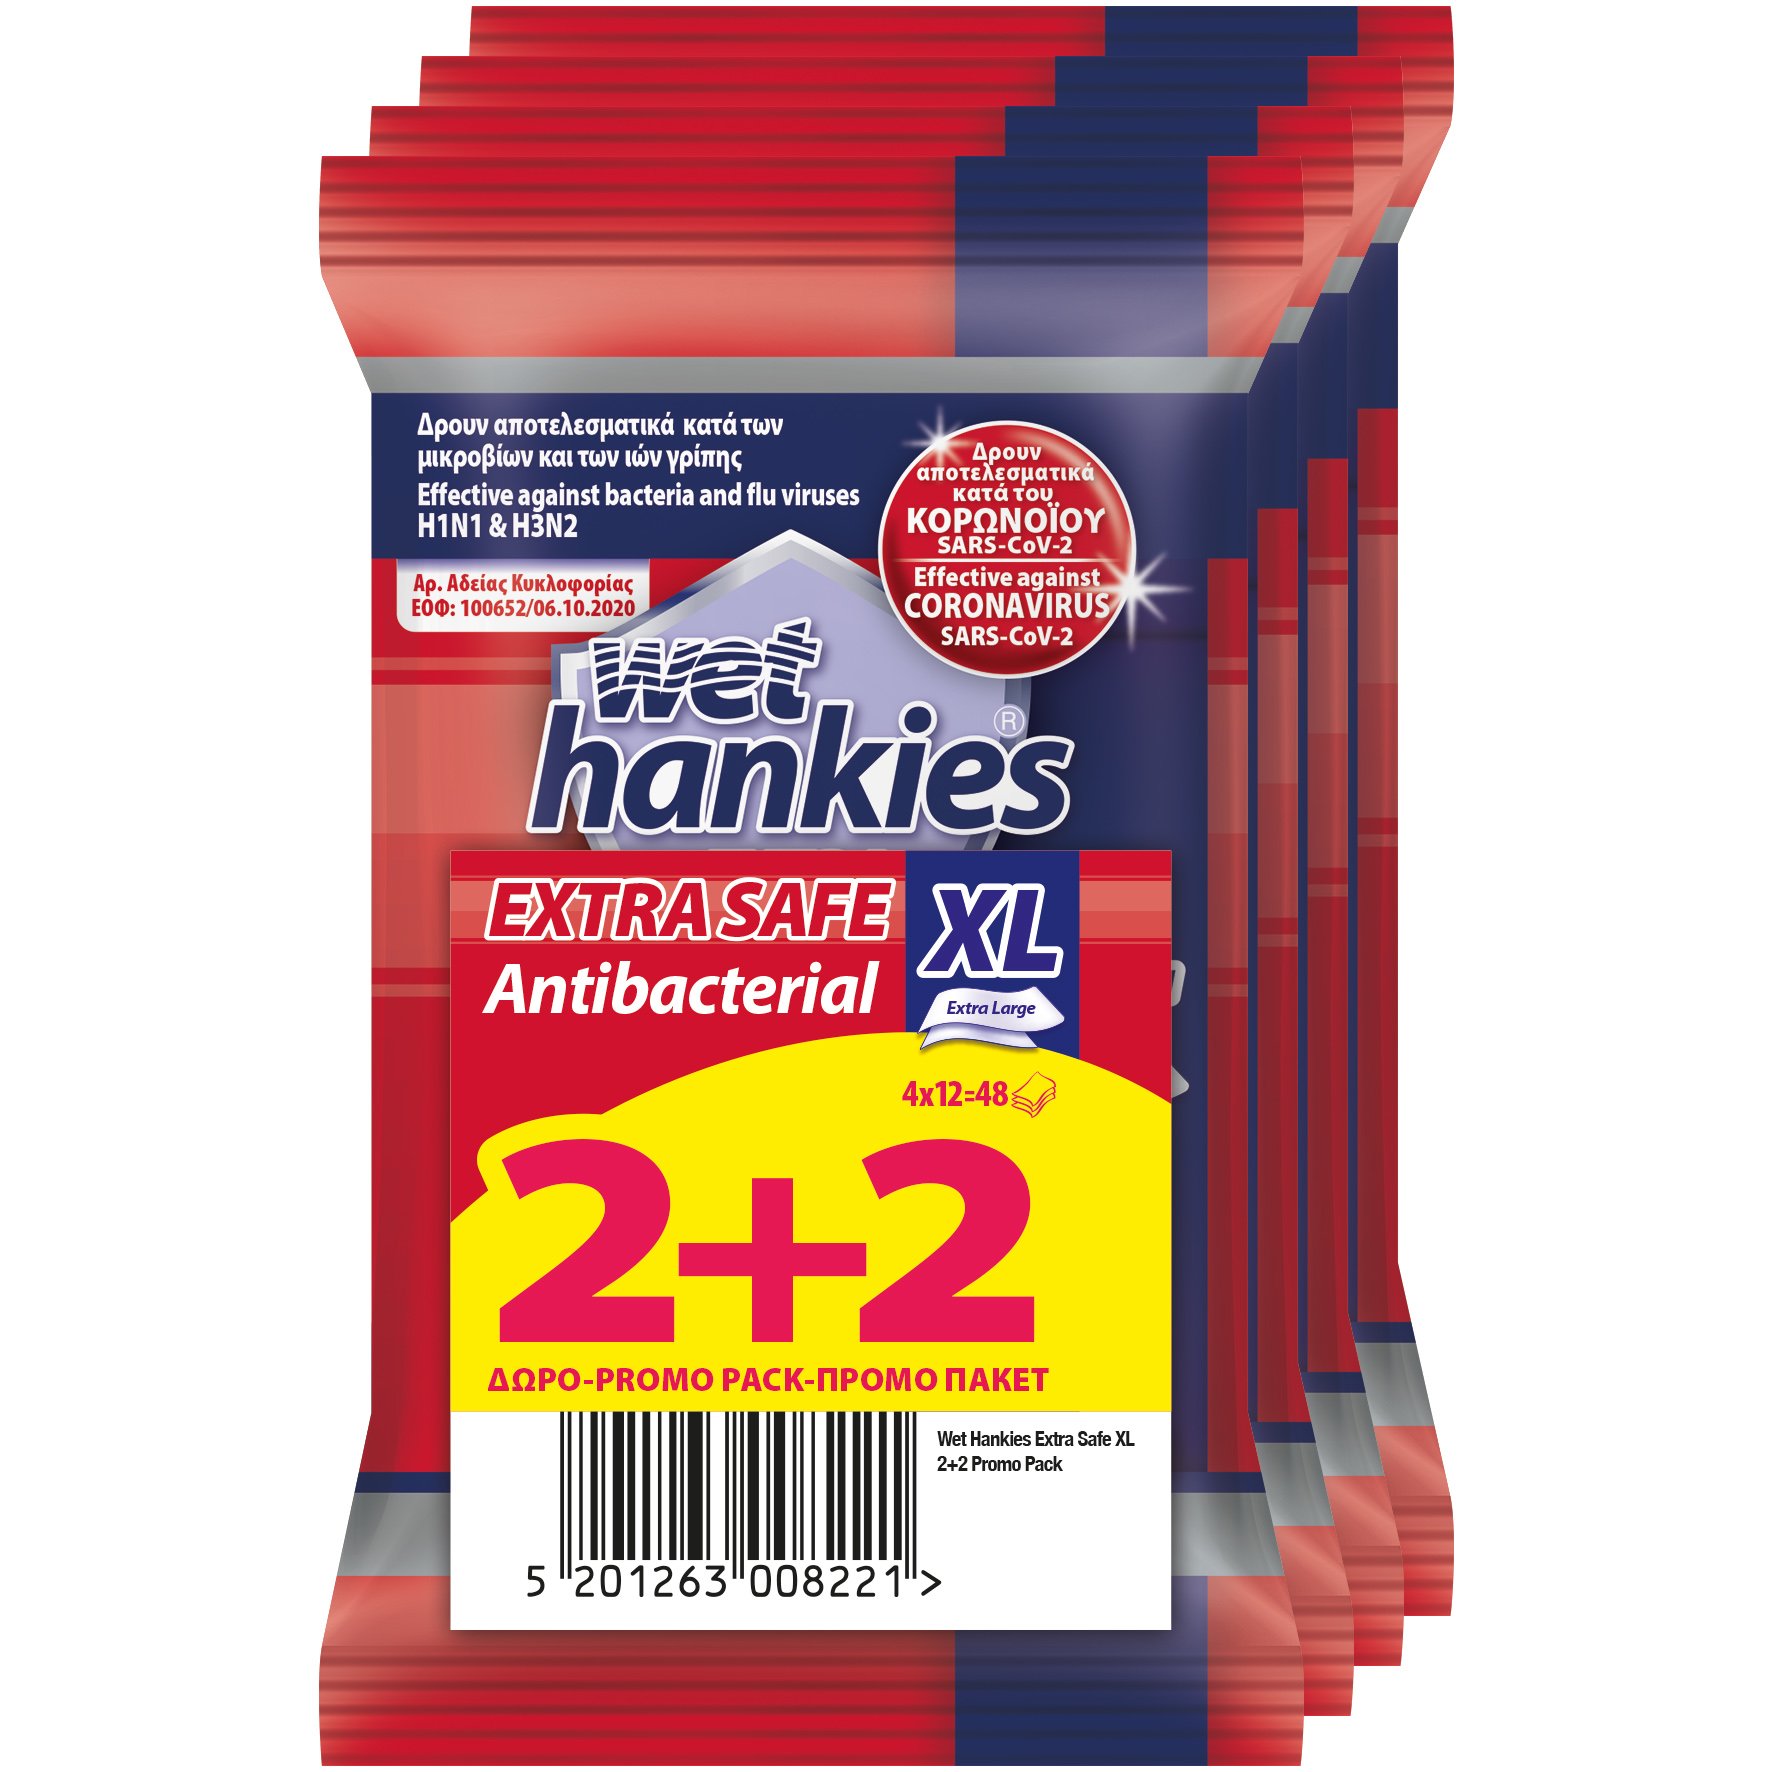 ΜΕΓΑ Wet Hankies Extra Safe Extra Large Antibacterial Αντισηπτικά Μαντηλάκια 4x12 Τεμάχια 2+2 Δώρο